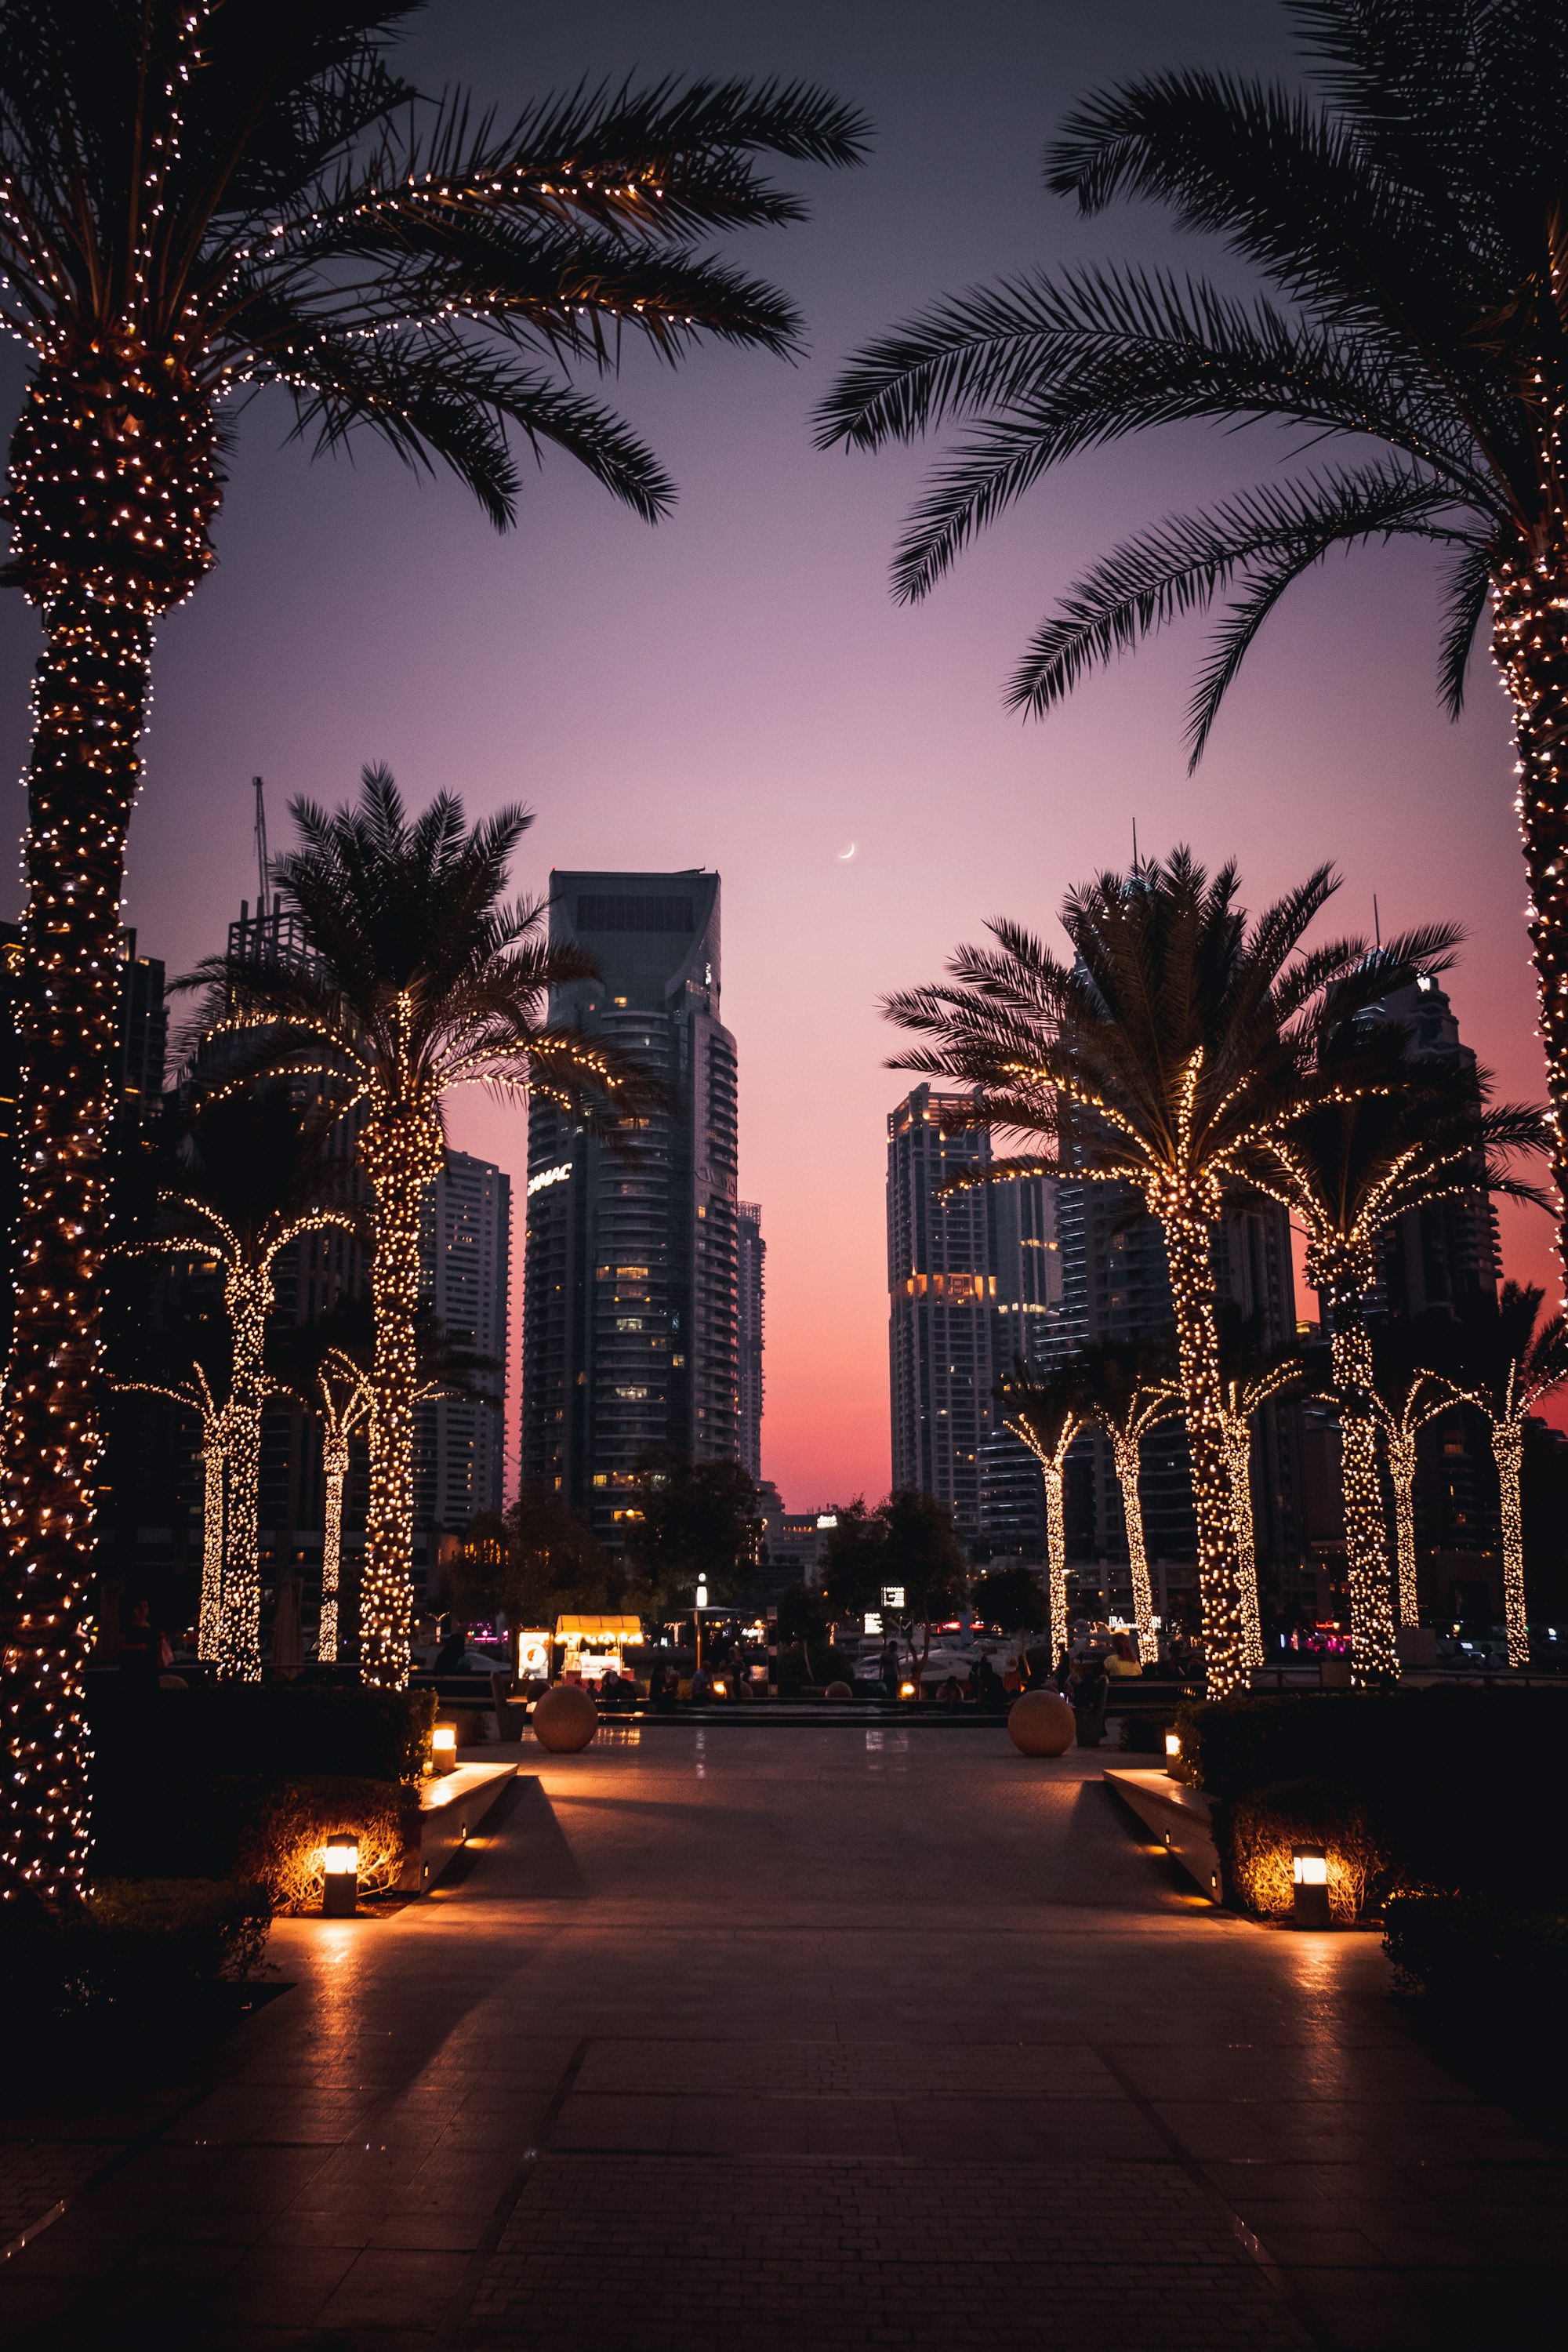 Evening view of Dubai